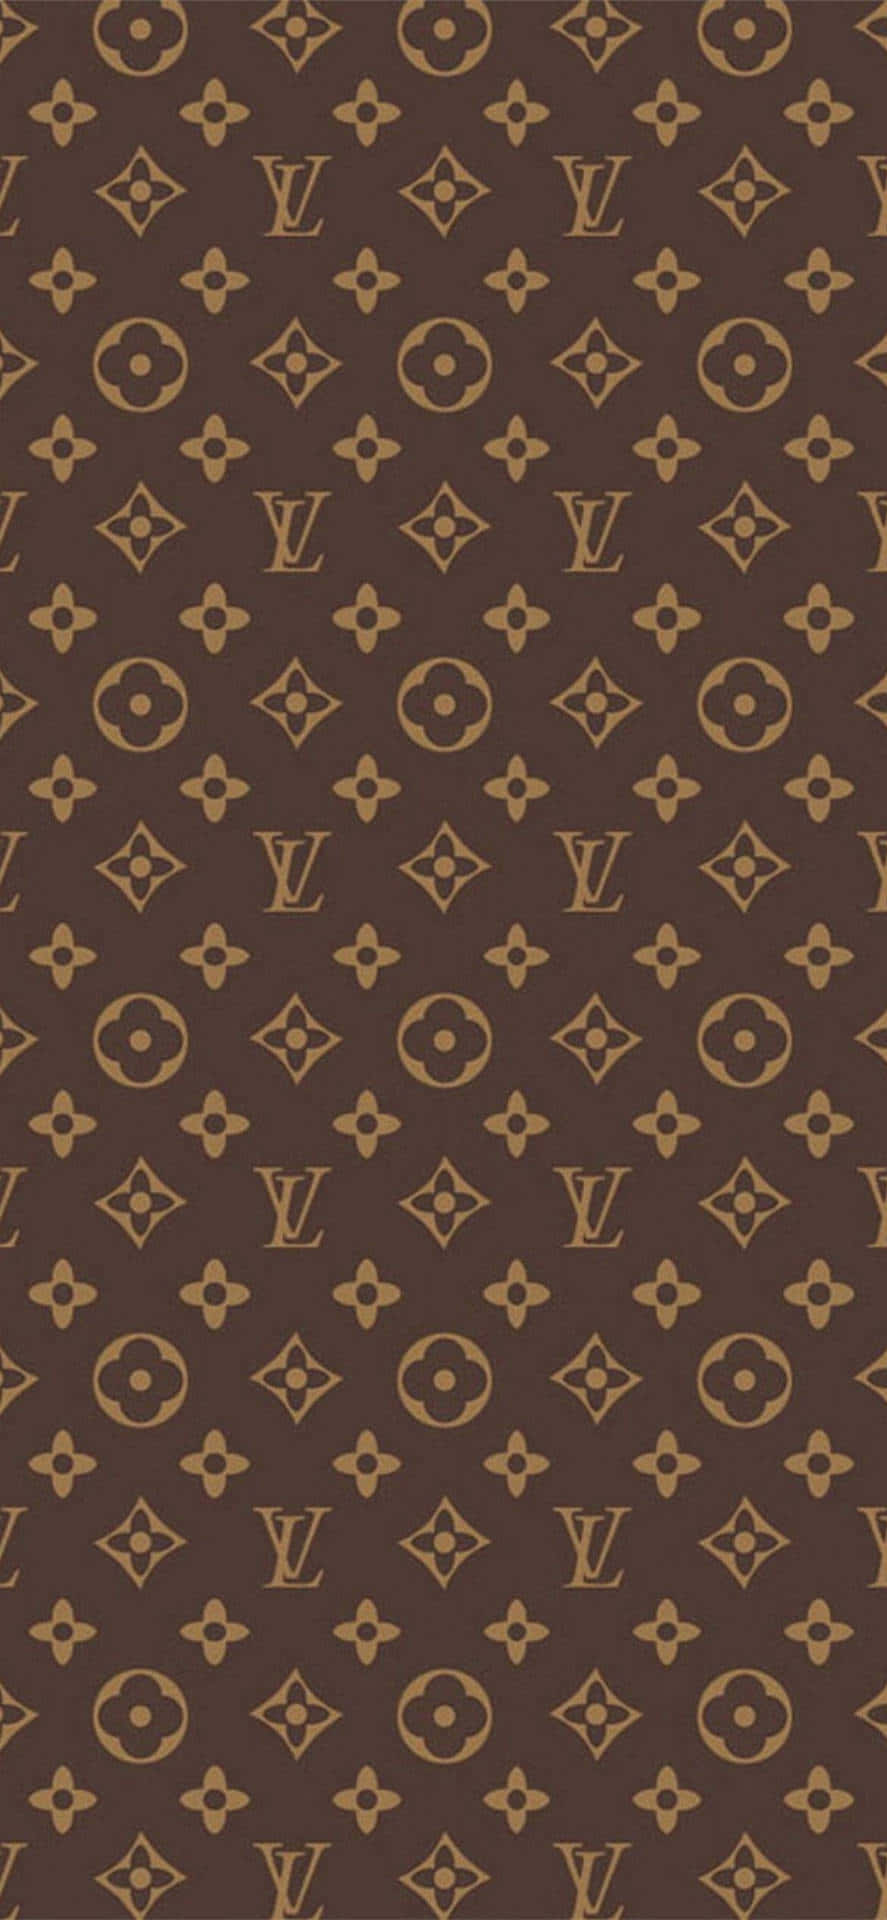 Traditionsluxus: Brun og guld ornamentere tæppe Wallpaper